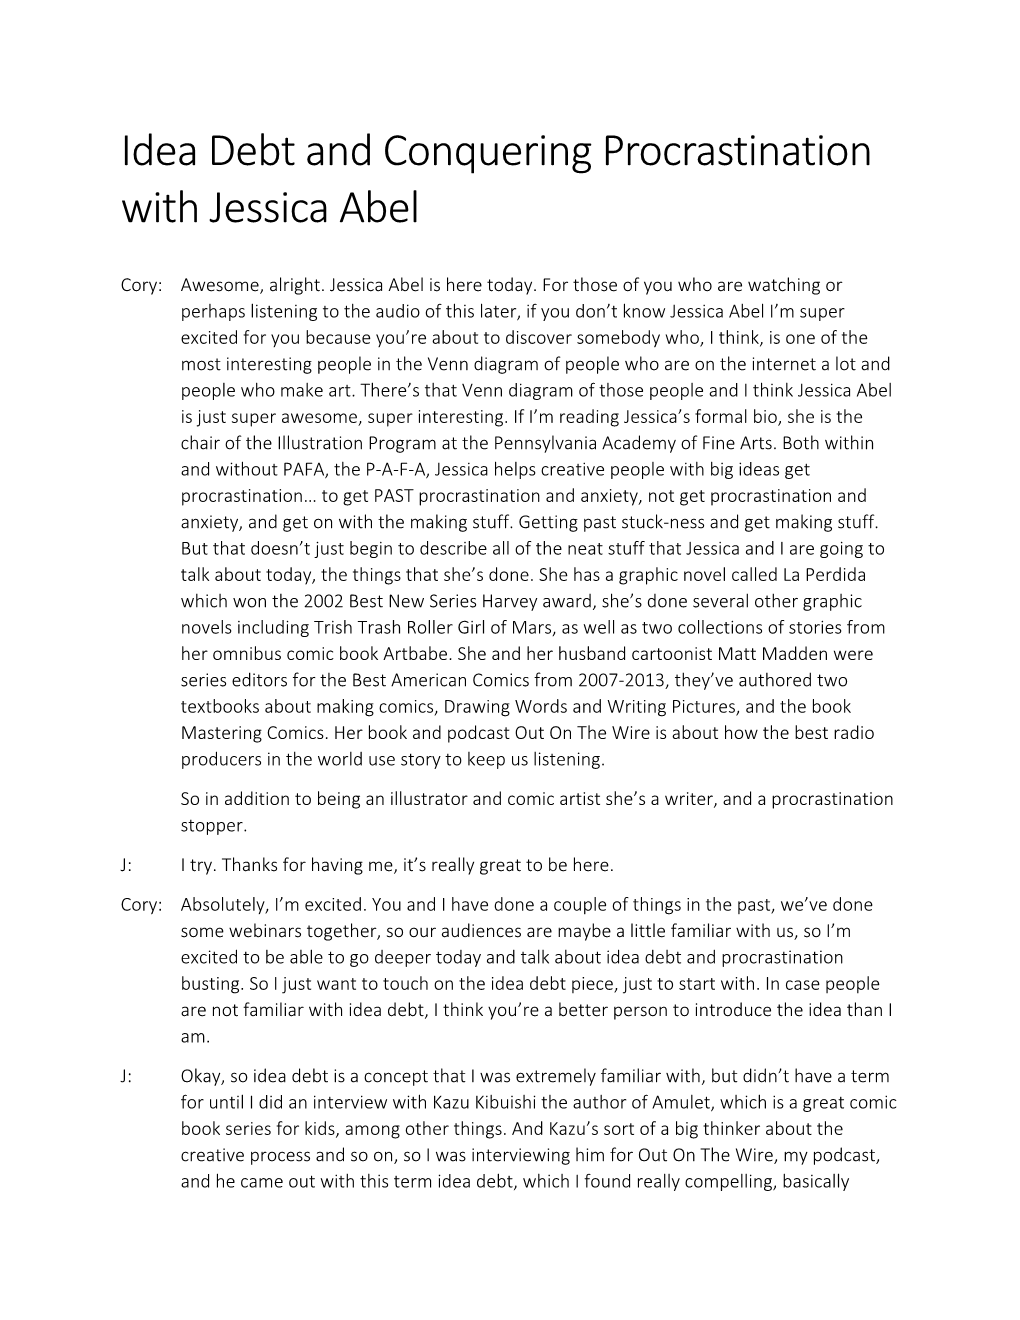 Idea Debt and Conquering Procrastination with Jessica Abel